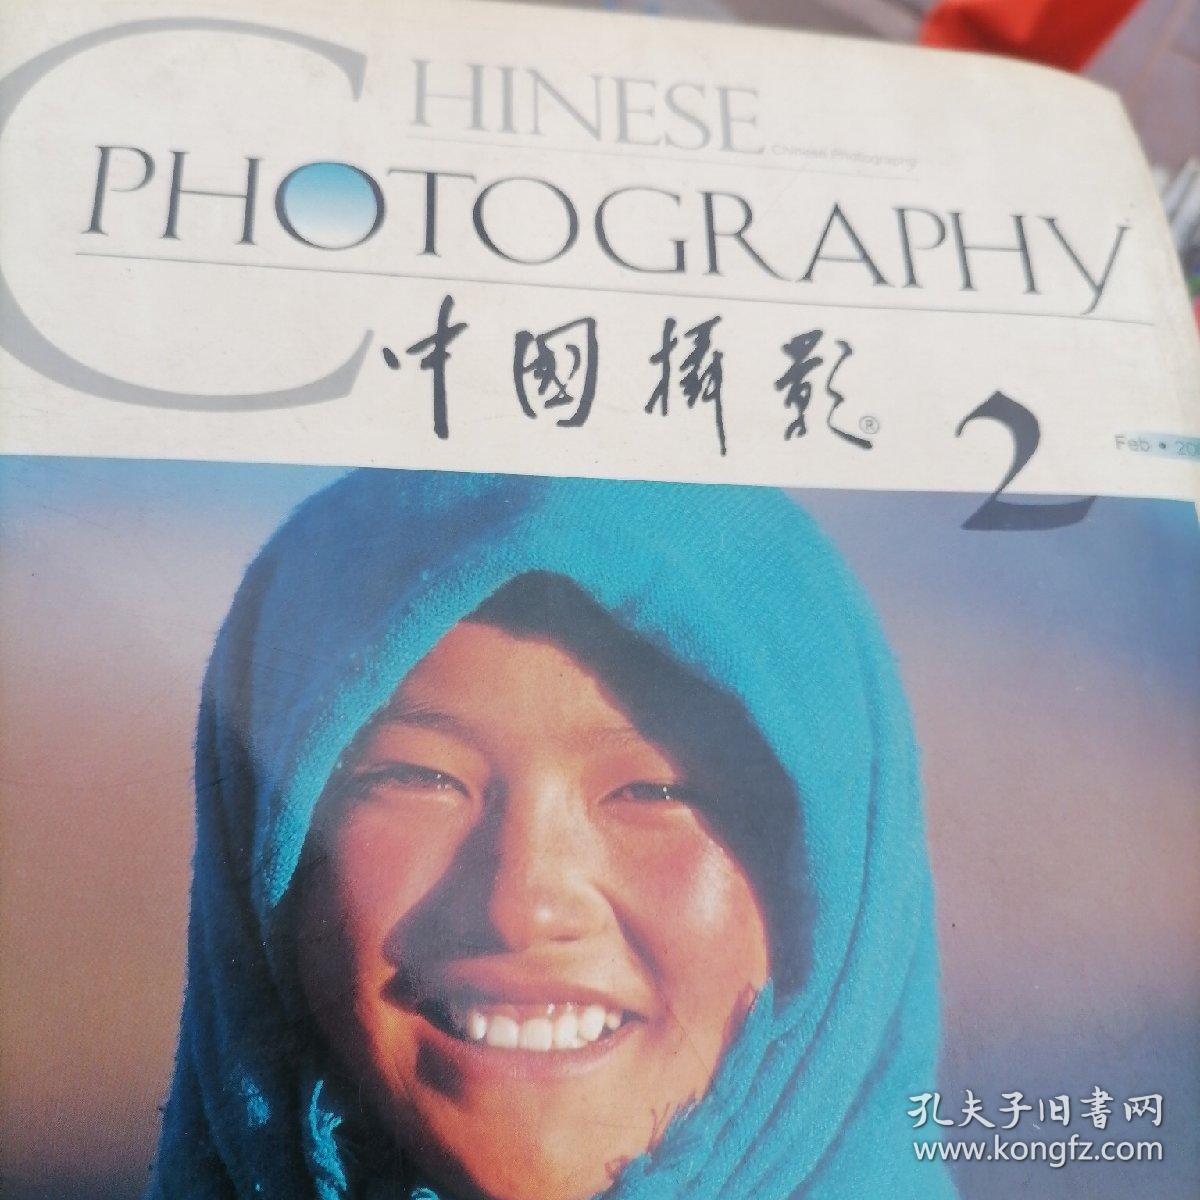 中国摄影